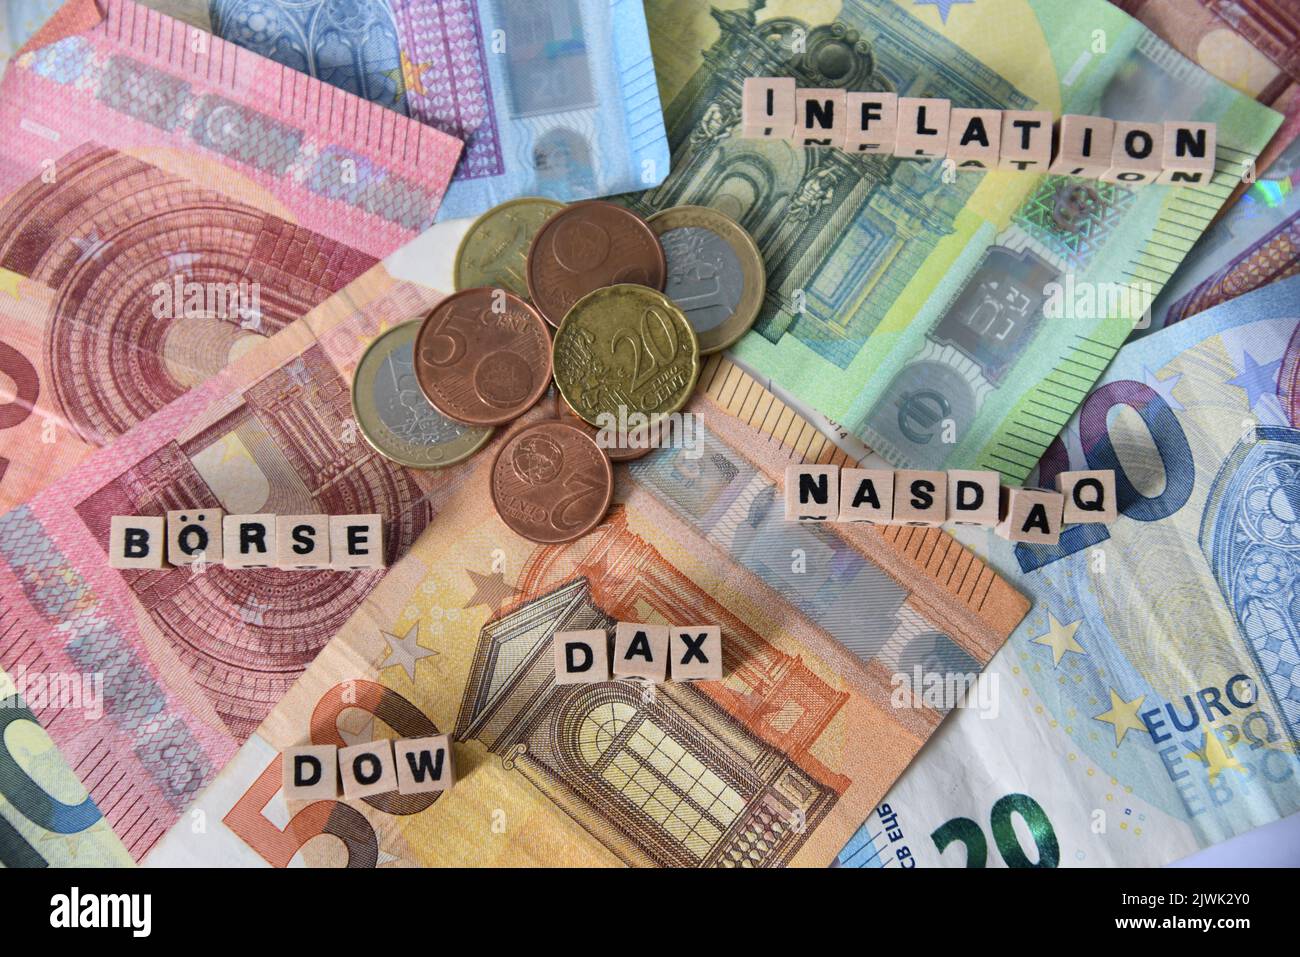 euro banconote e le parole di diverse borse come nasdaq, dow jones e dax Foto Stock